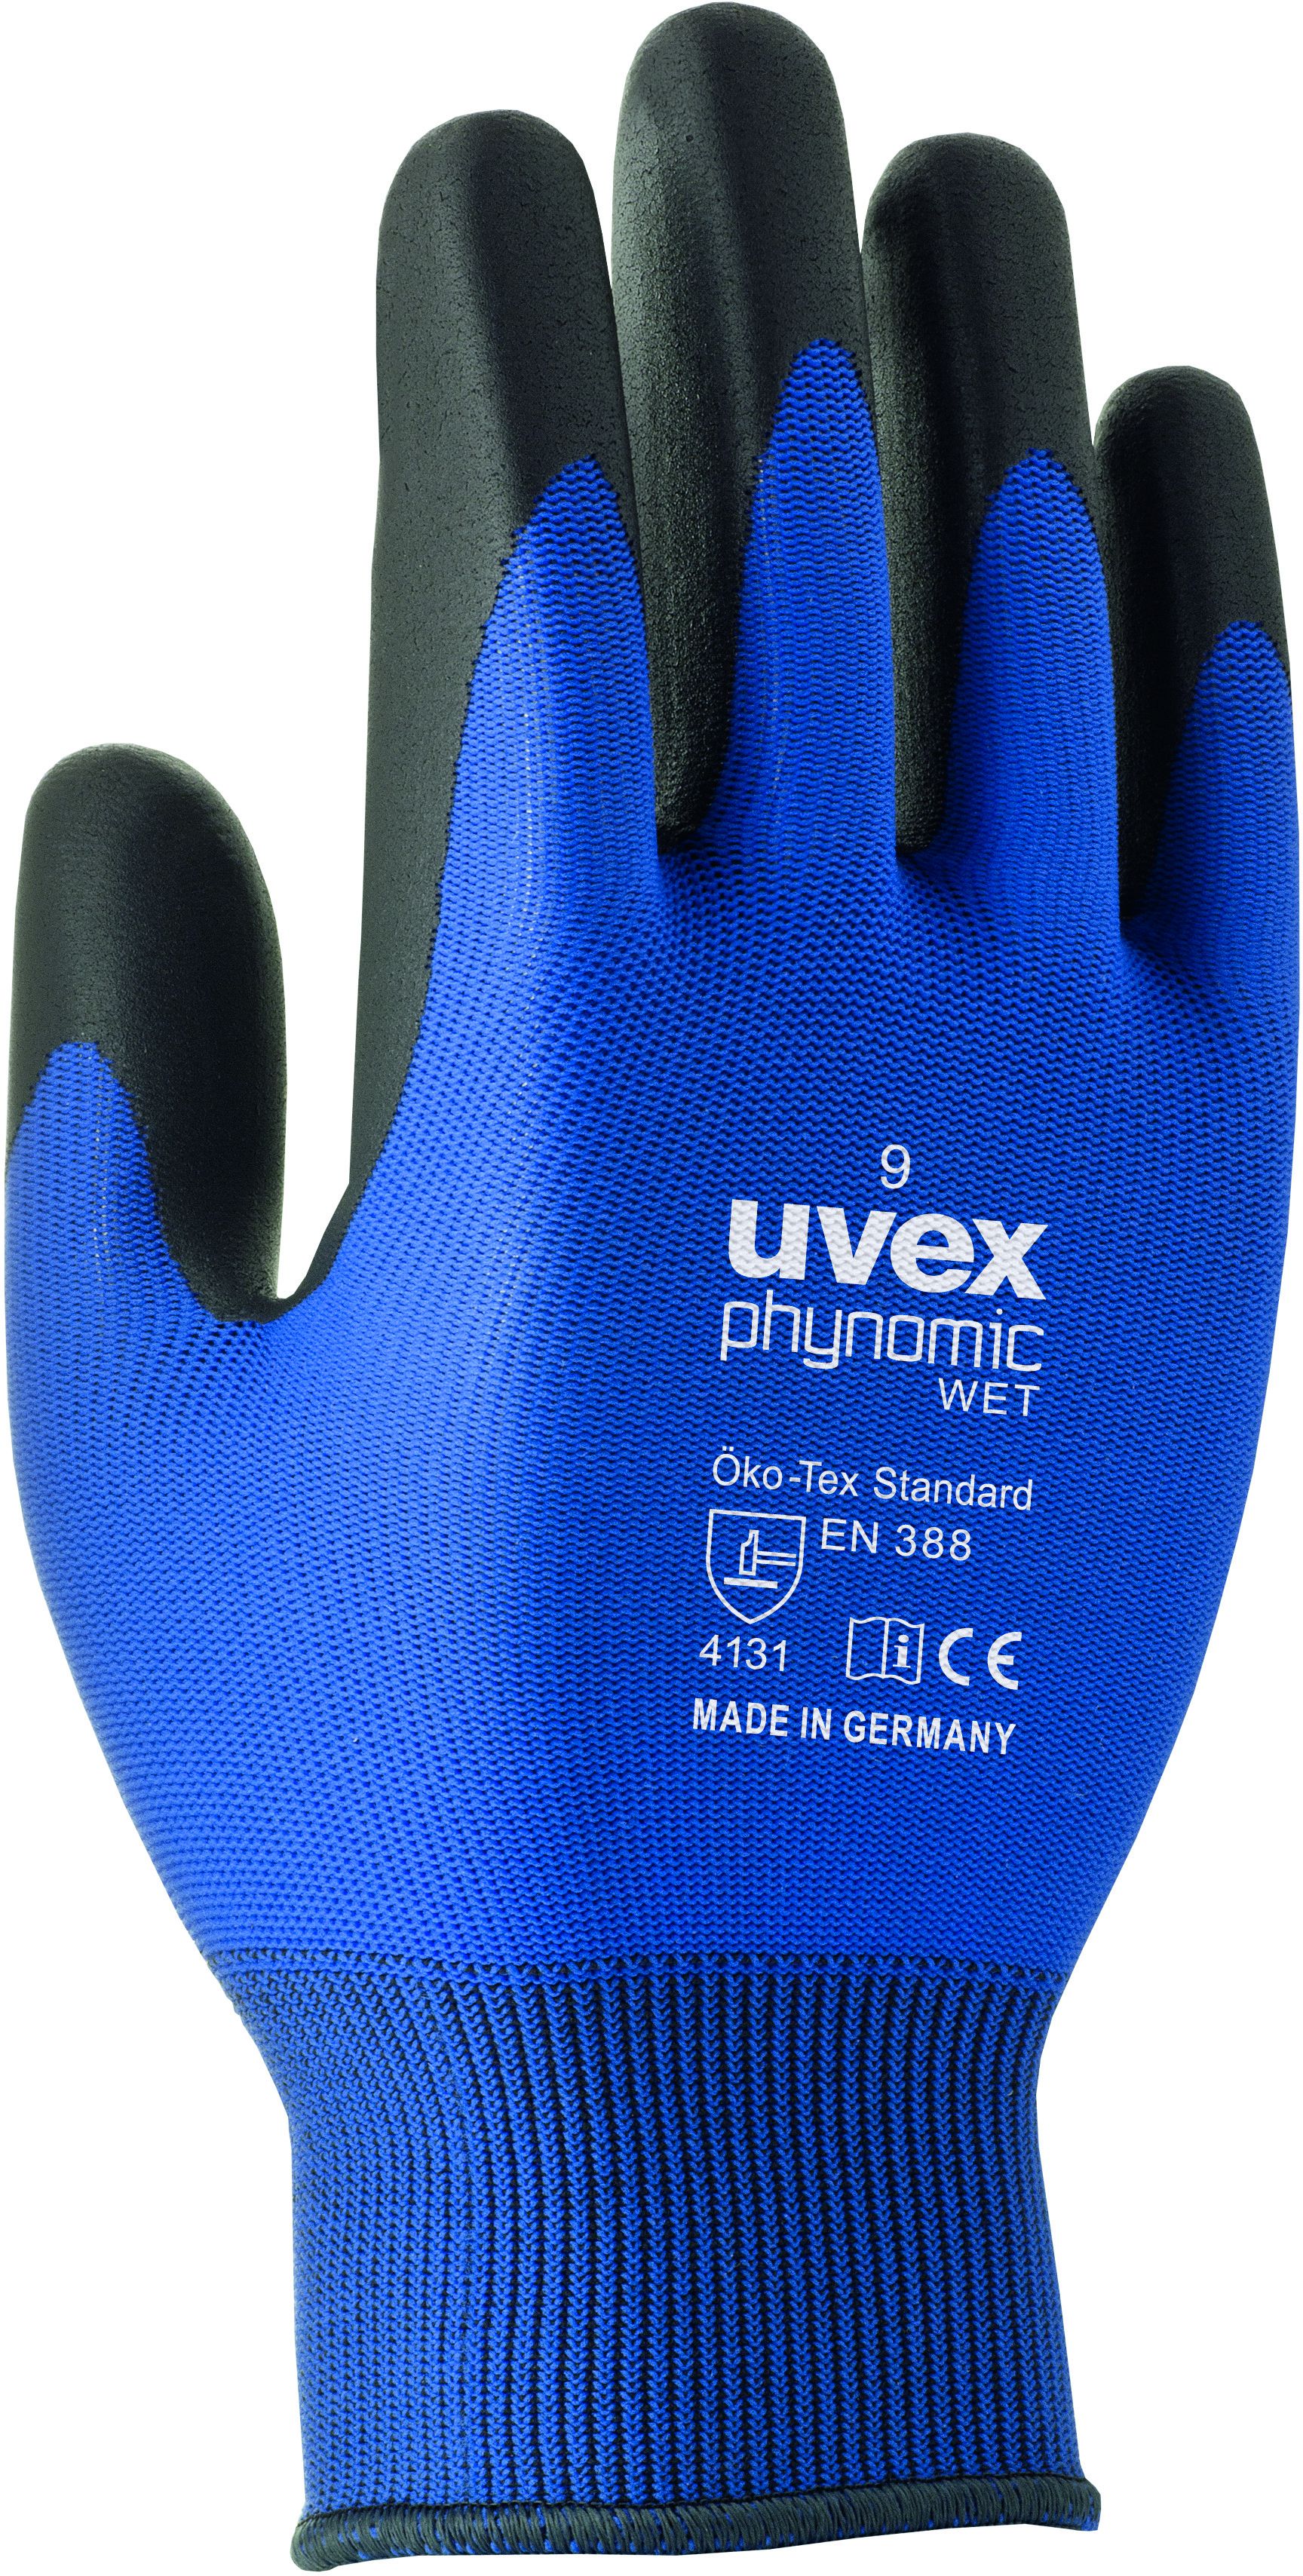 UVEX Arbeitshandschuh phynomic WET Gr. 6, blau/anthrazit, Art. 60060 - Arbeitsschutz